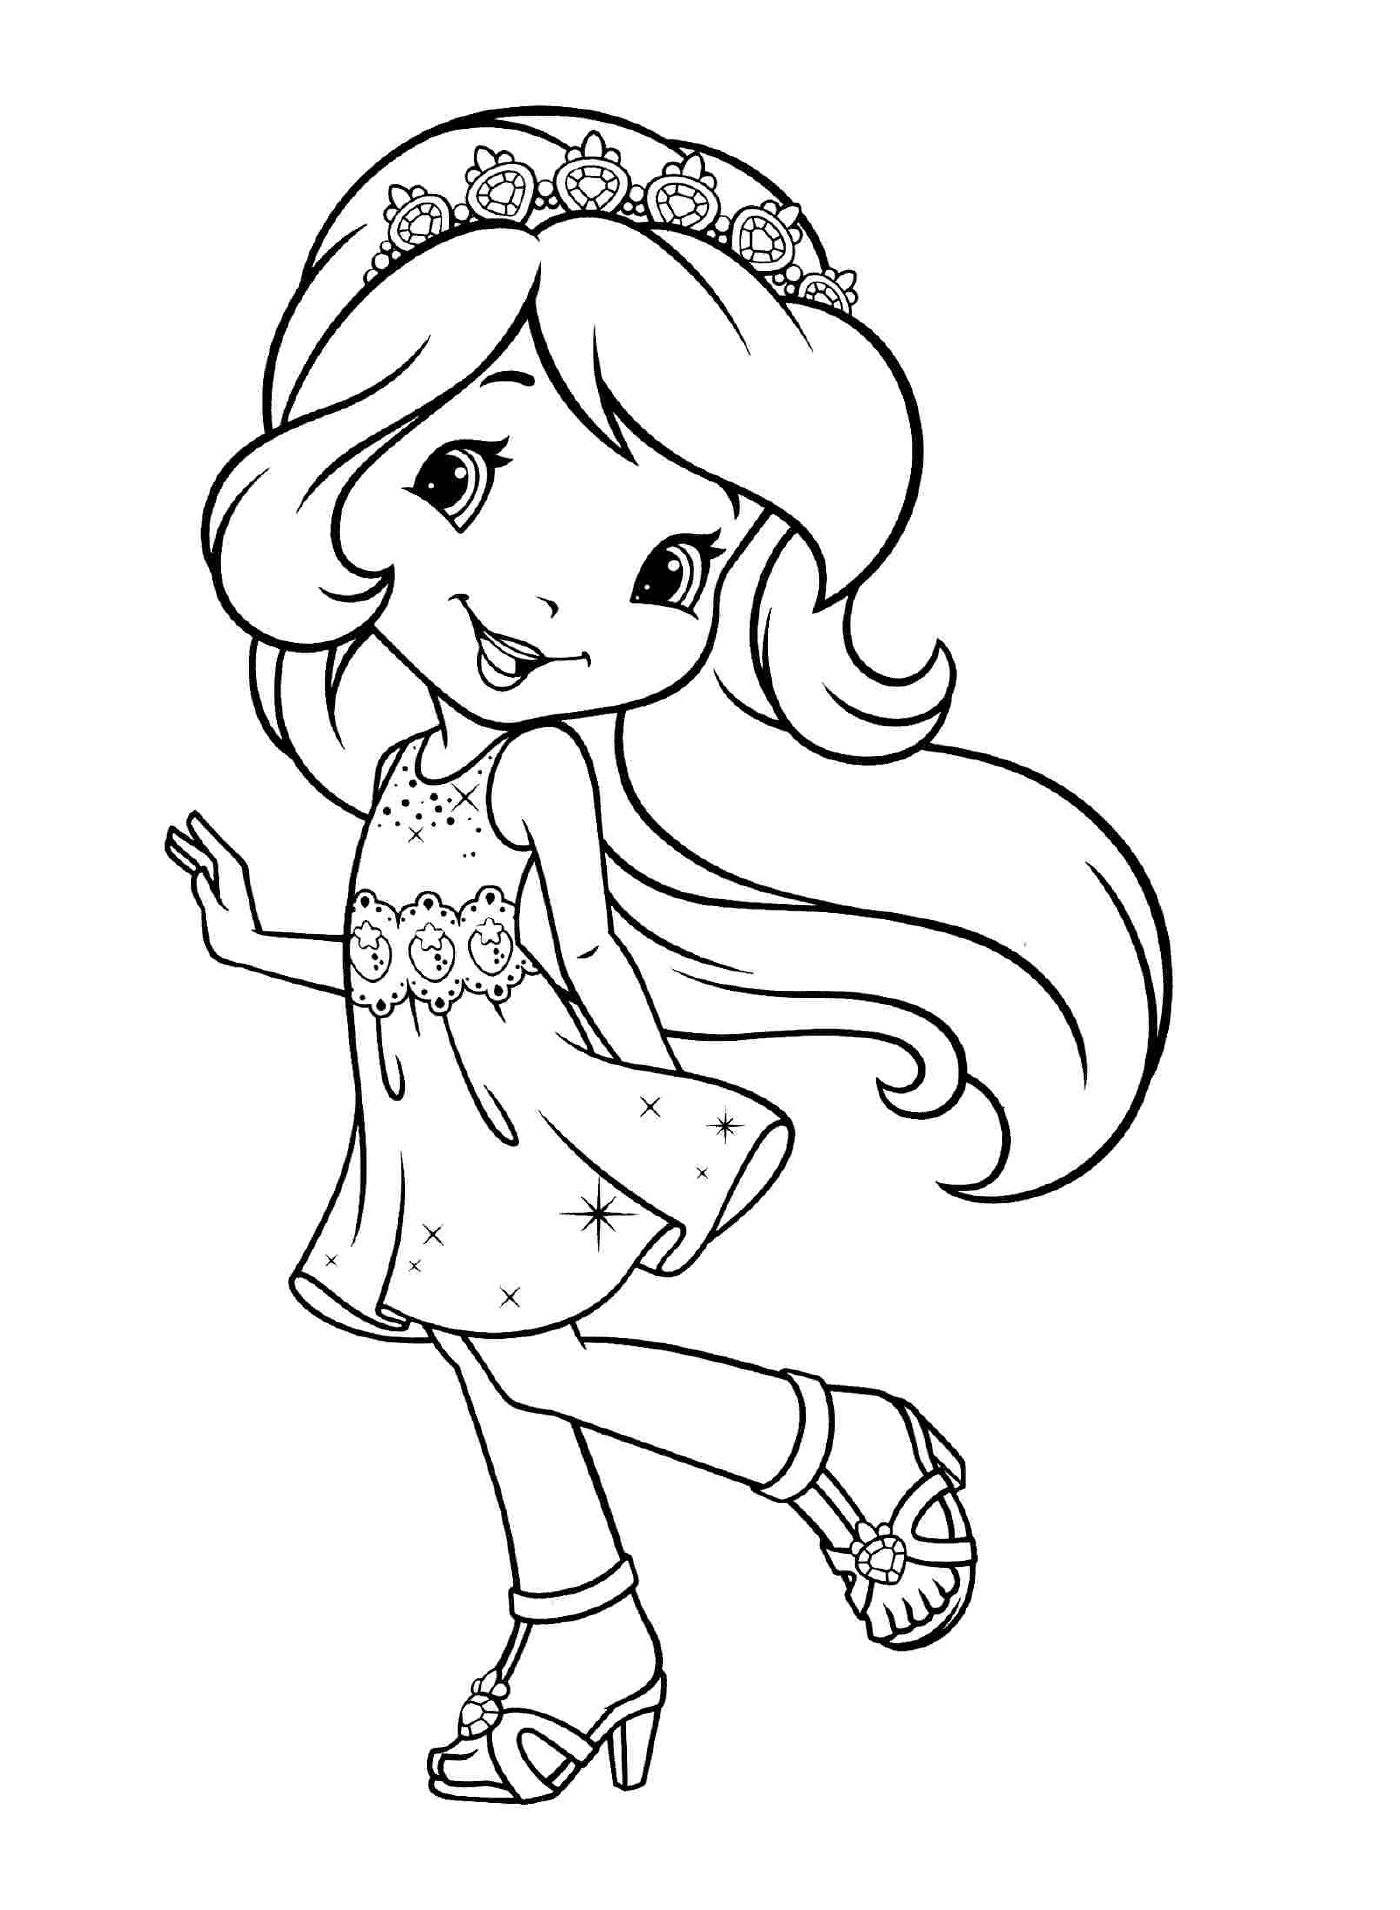  Prinzessin Erdbeere mit langen seidigen Haaren 